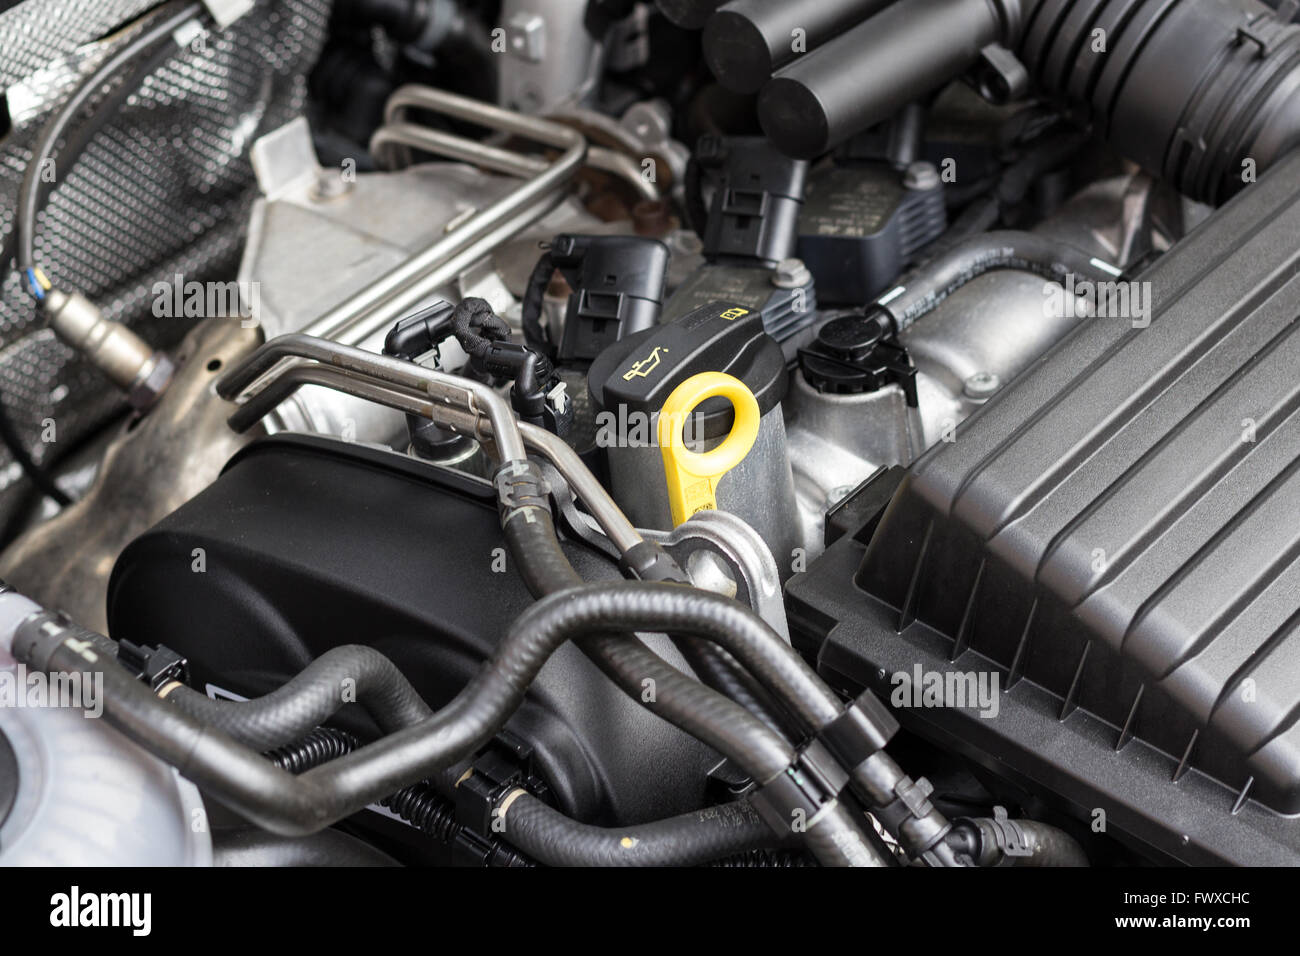 Moderno, limpio el motor del coche - motor closeup Foto de stock